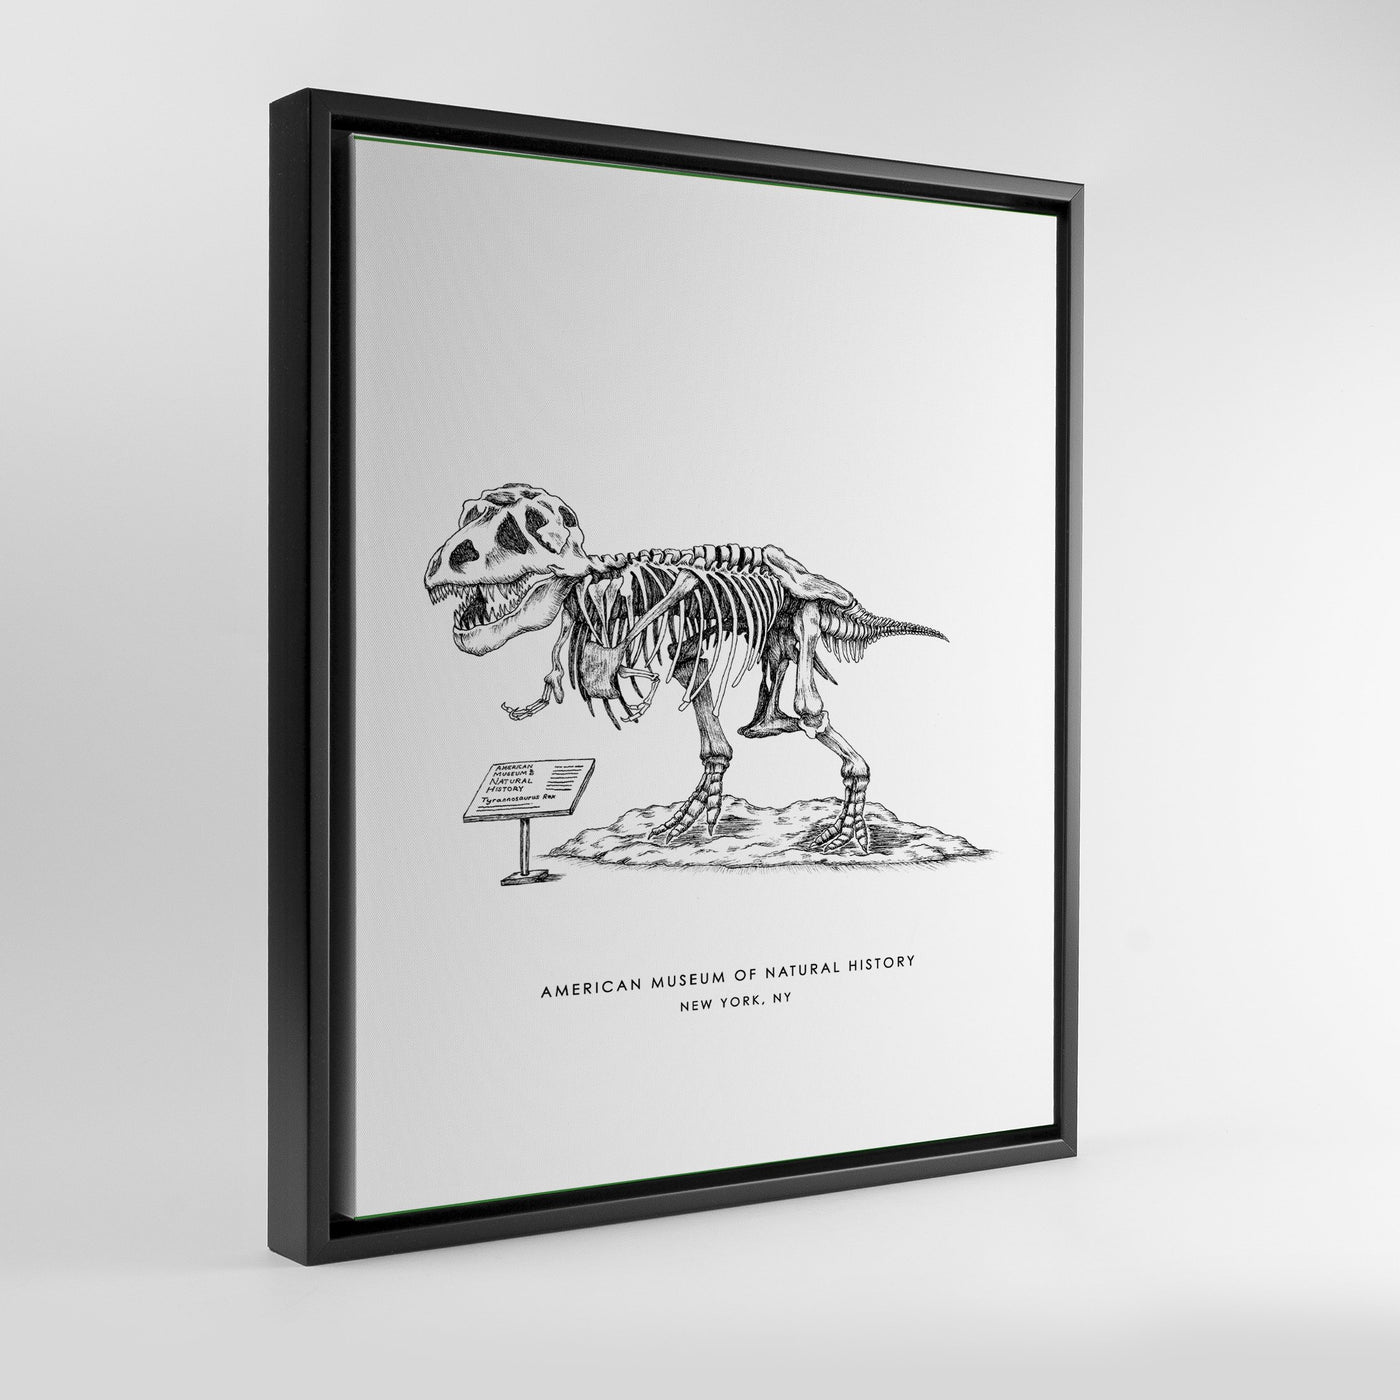 Gallery Prints Black Frame Canvas / 8x10 / Black Frame New York Dinosaur Print Katie Kime